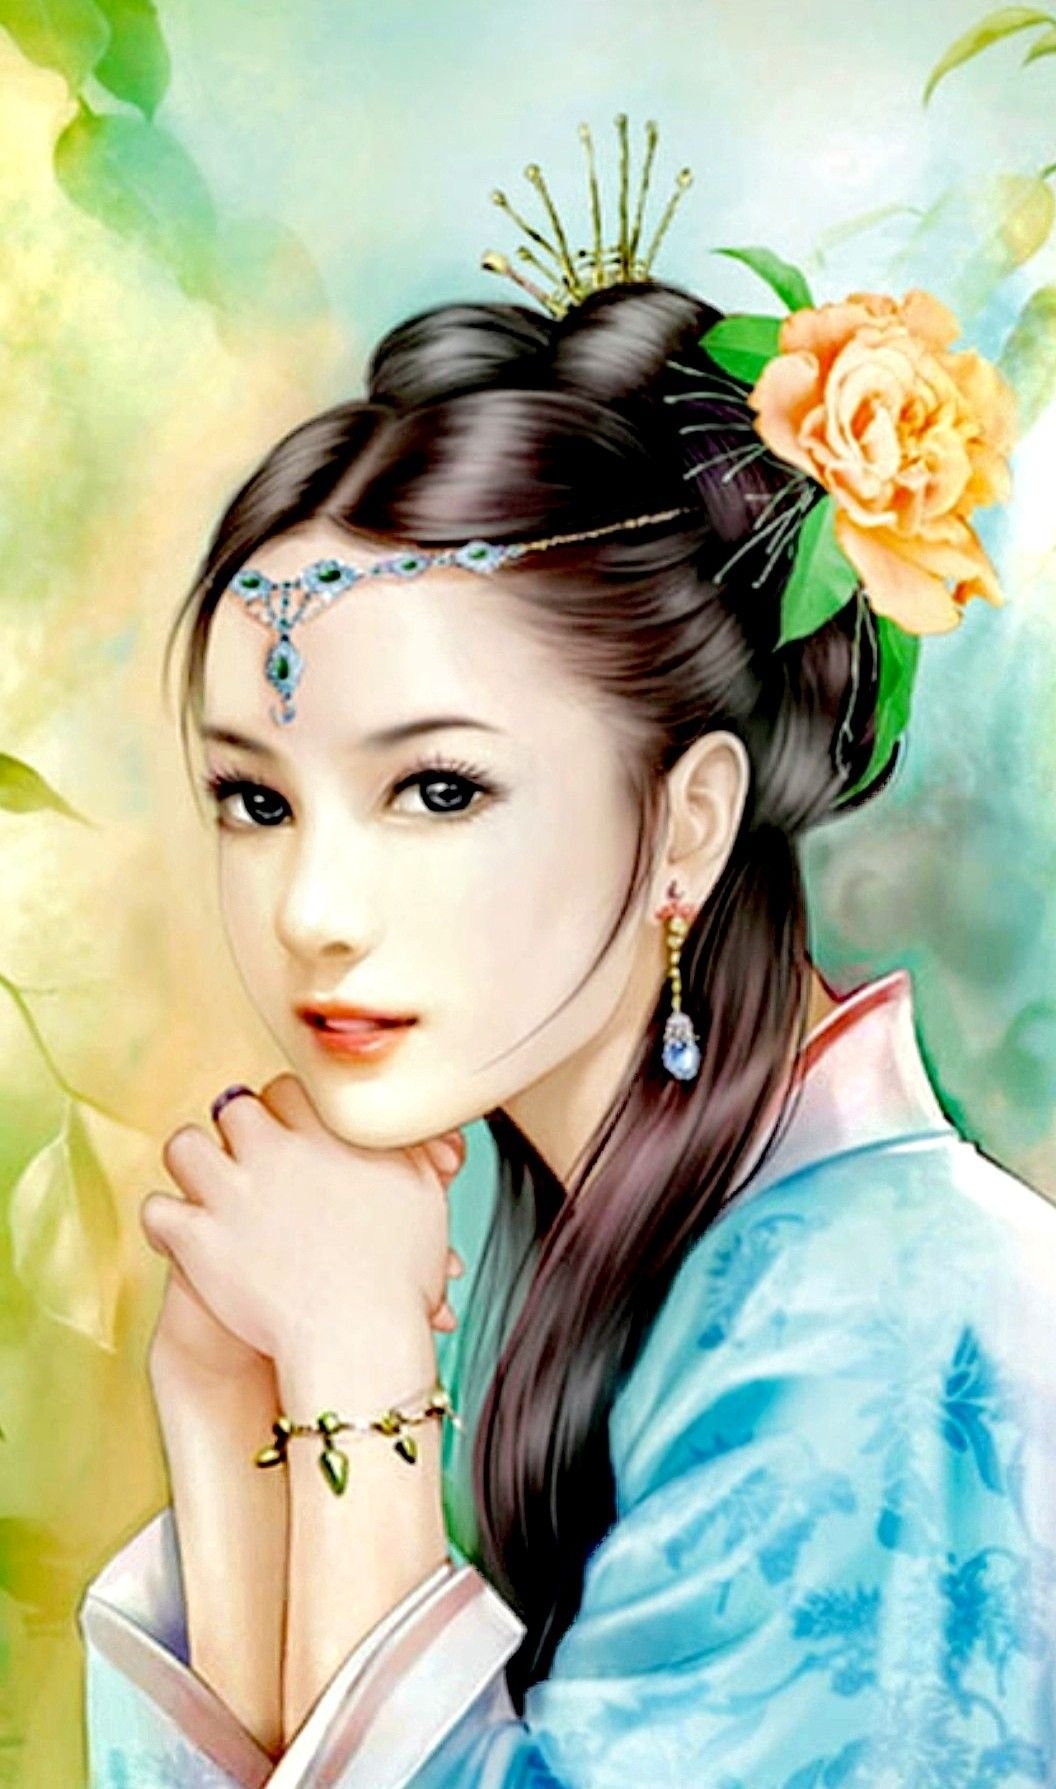 Образ женщины в живописи Китая: она краснеет, но соблазняет молчаливая близость